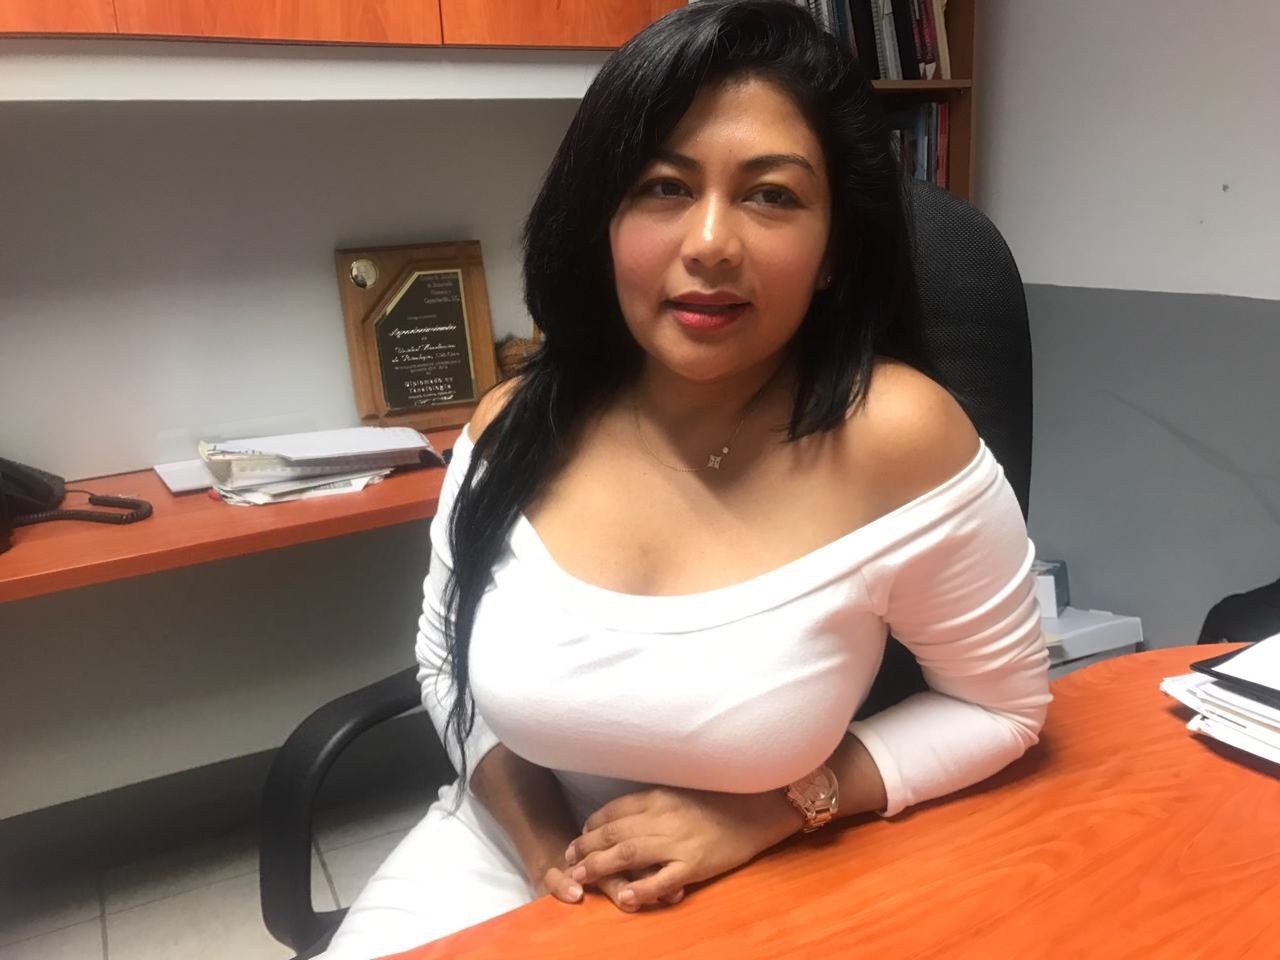 Una falacia, la denuncia por supuesta amenaza de la maestra Elvira Salgado: Marisol Salado 